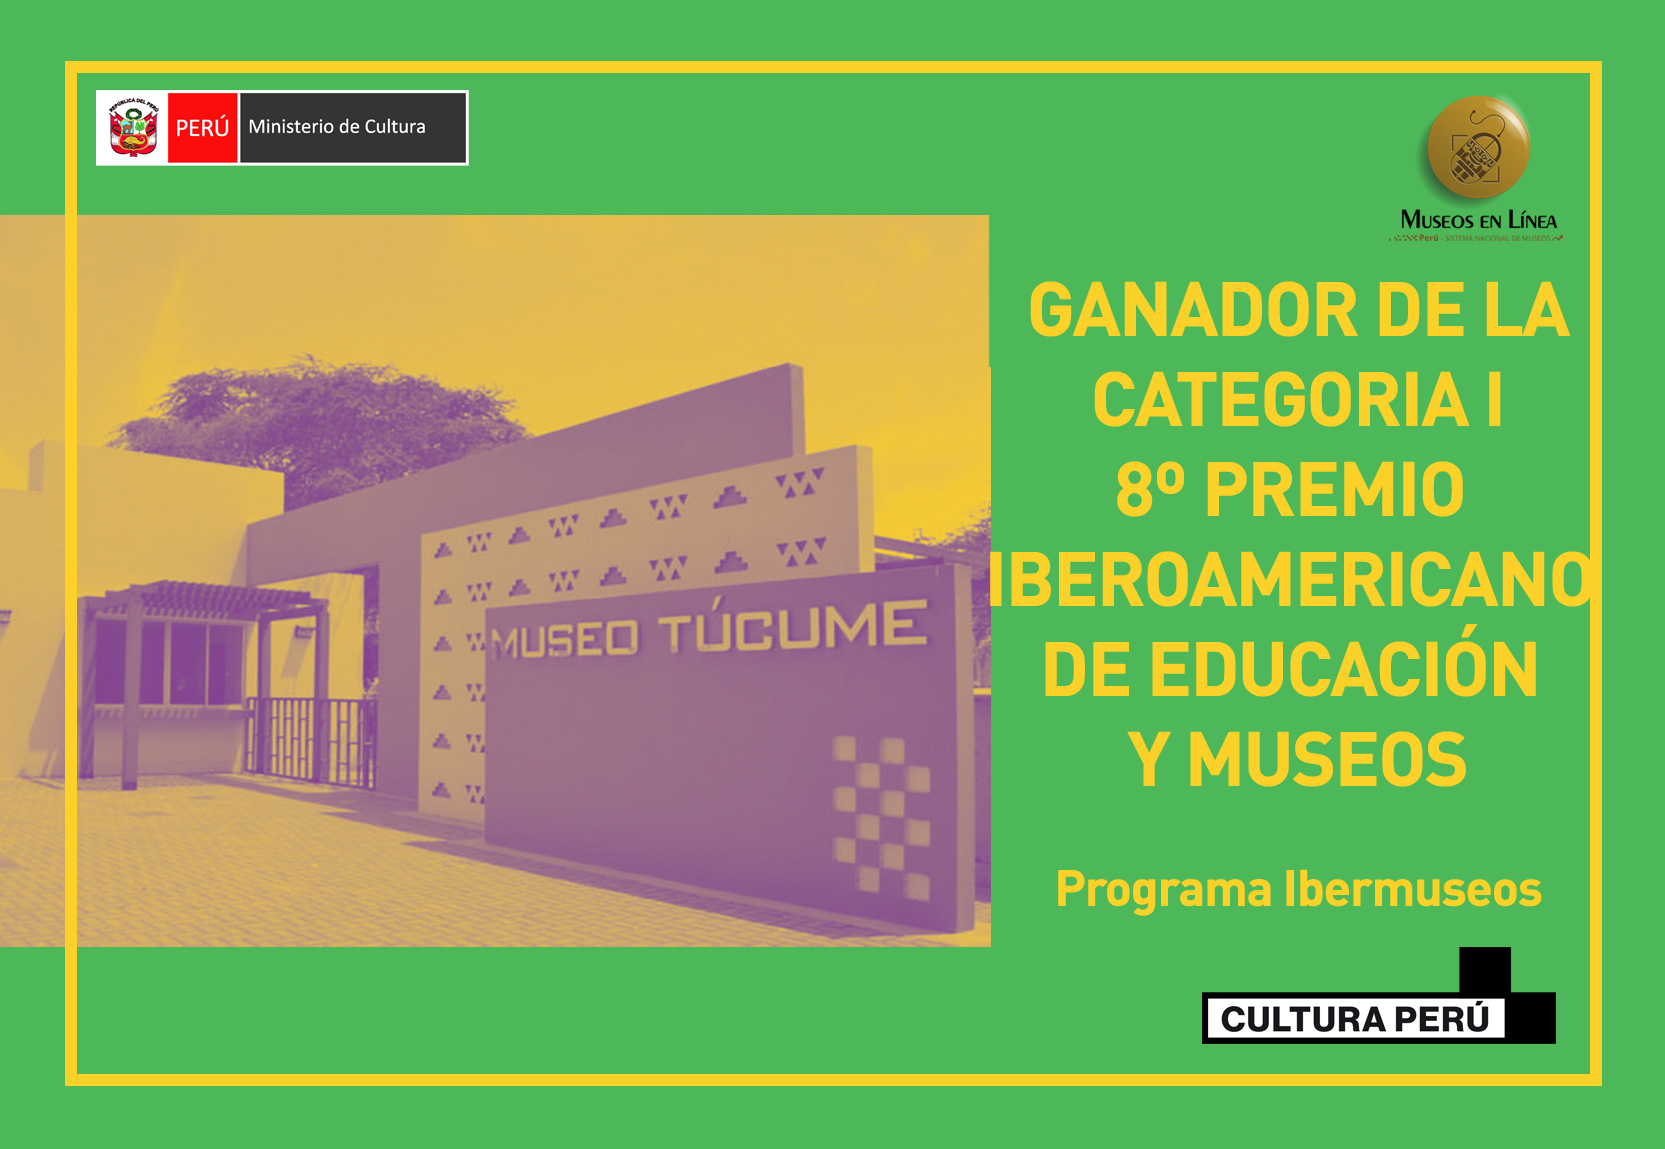 Museo de Sitio Túcume, Ganador del 8º Premio Iberoamericano de Educación y Museos